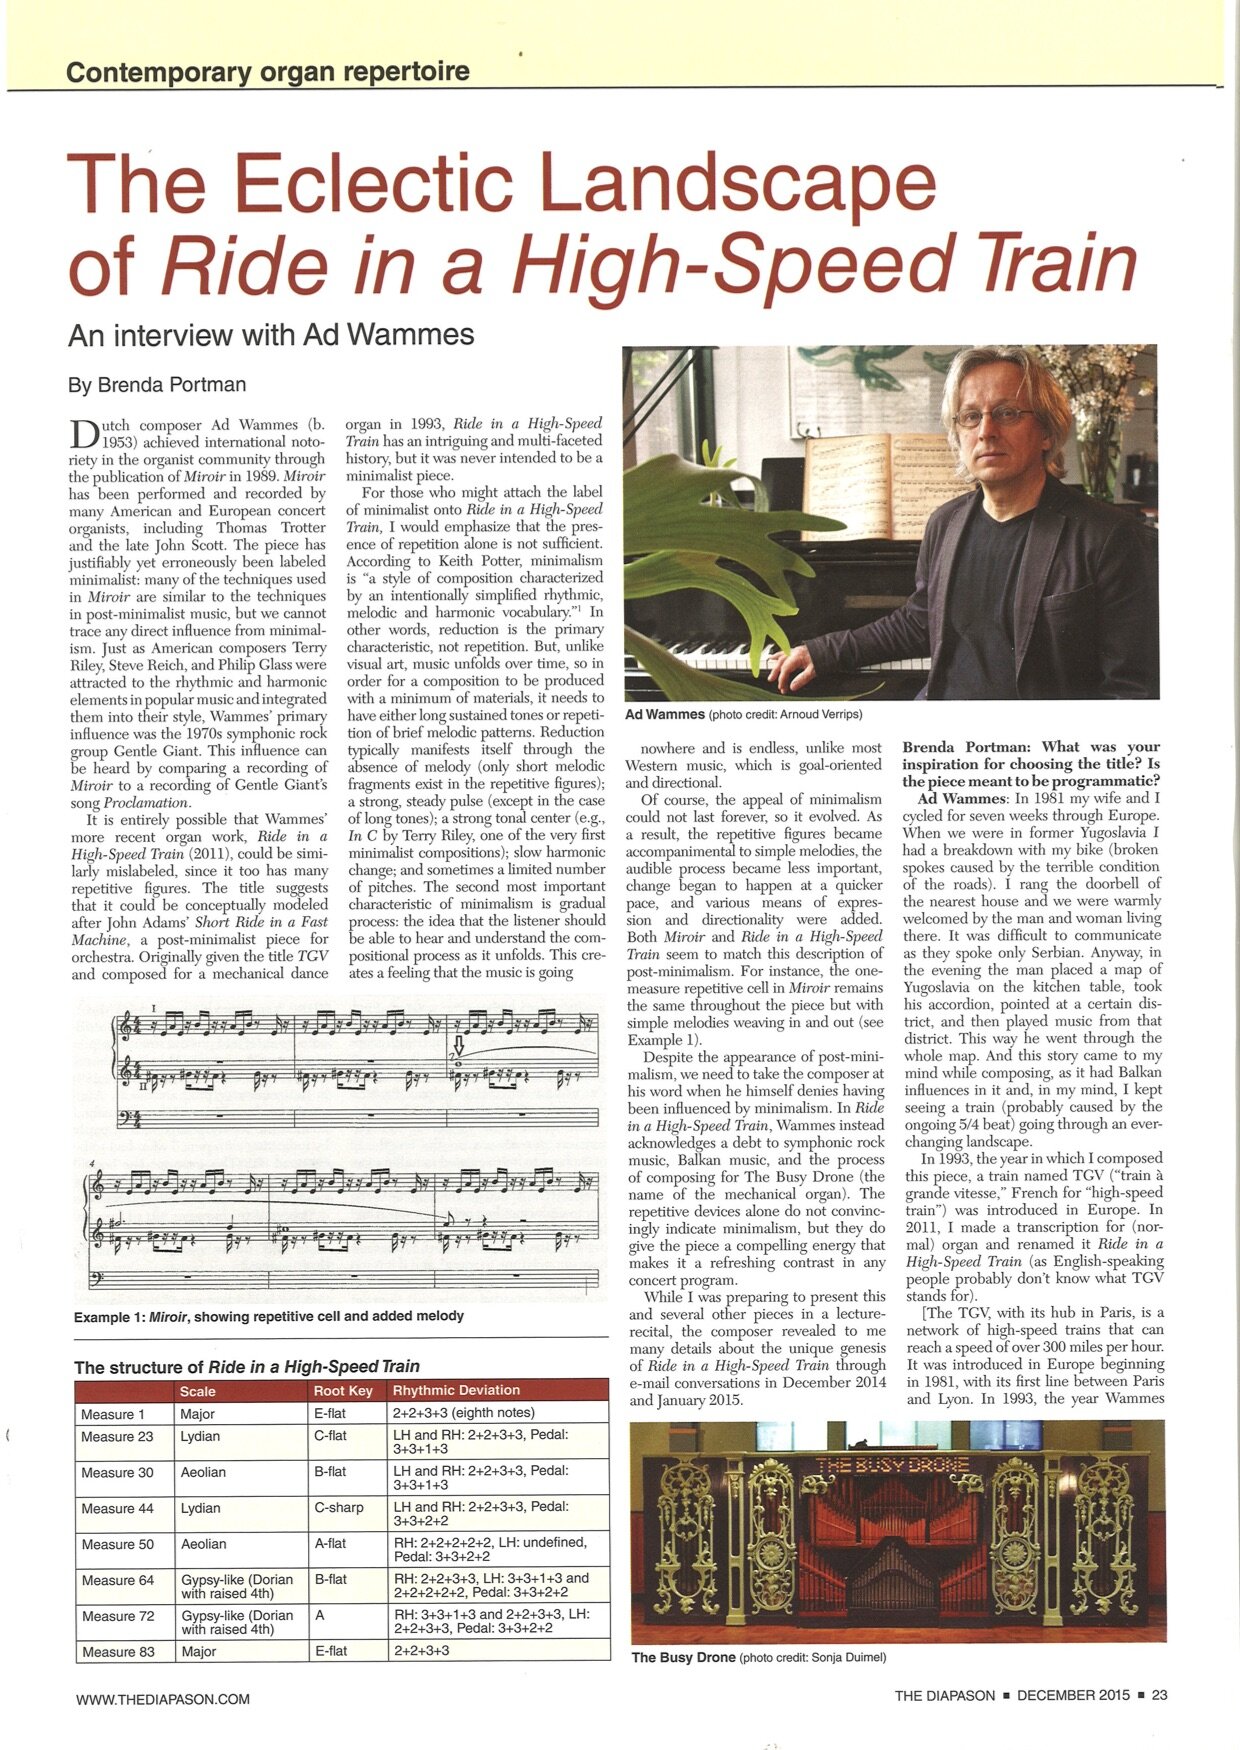 1The Diapason(dec. 2015) over Ride in a High-Speed Train.jpg